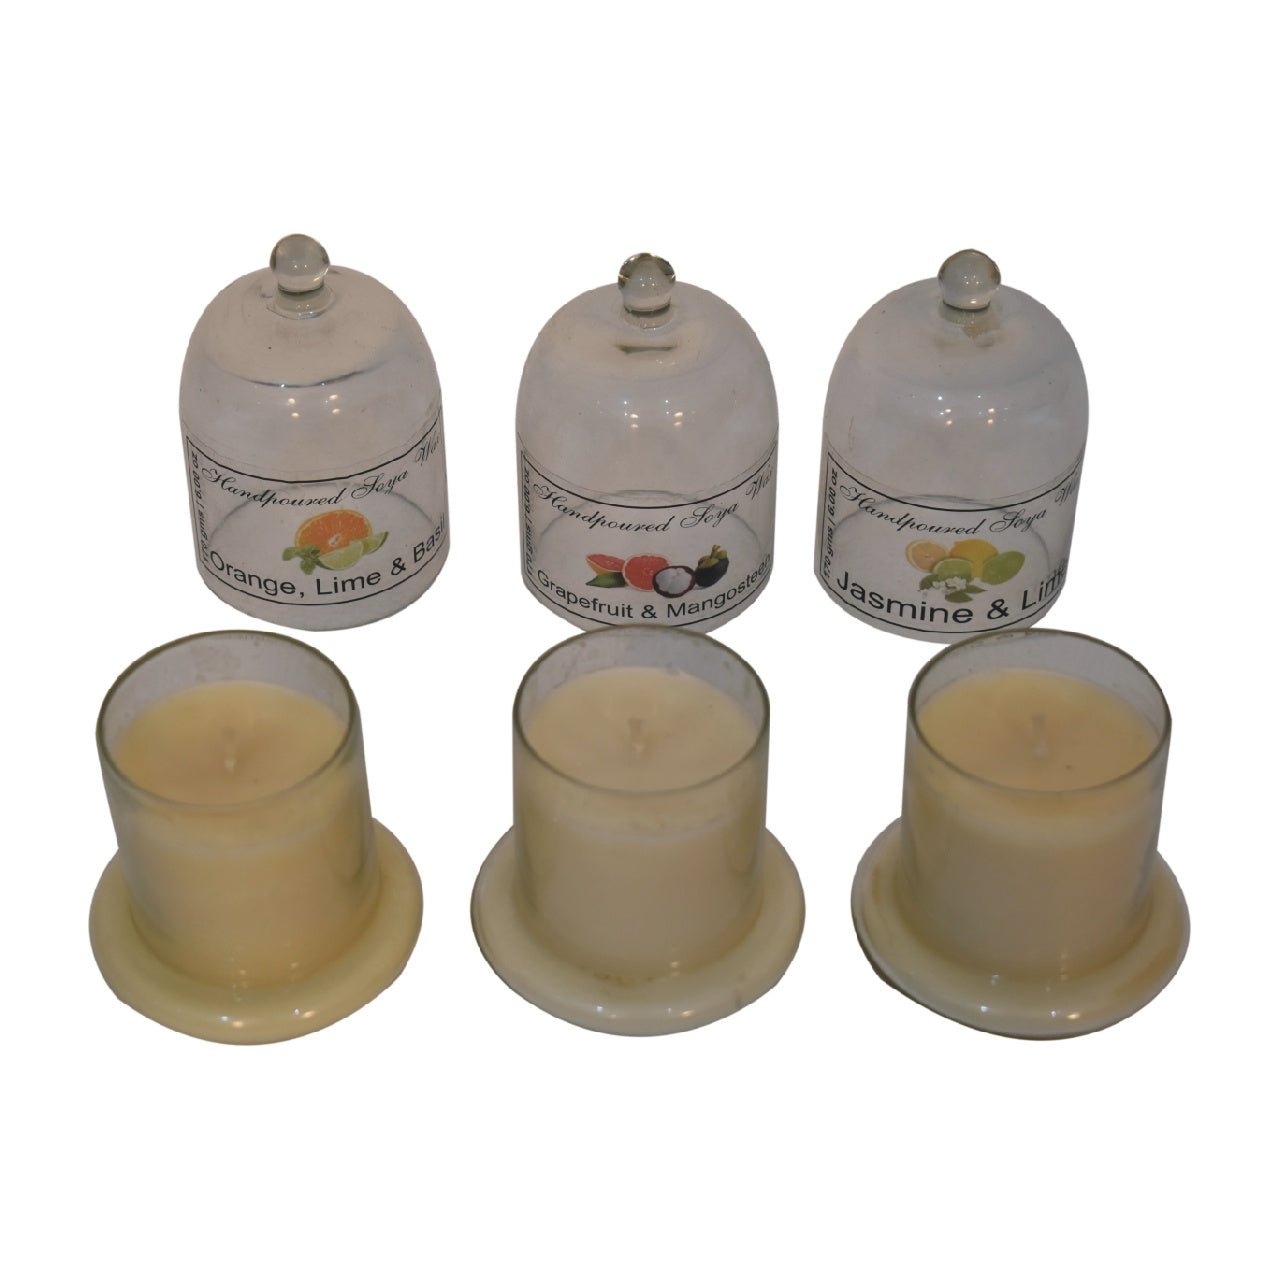 Glockenglaskerzen-Set mit 3 Stück (Orange, Limette und Basilikum, Grapefruit und Mangostan, Jasmin und Limette)